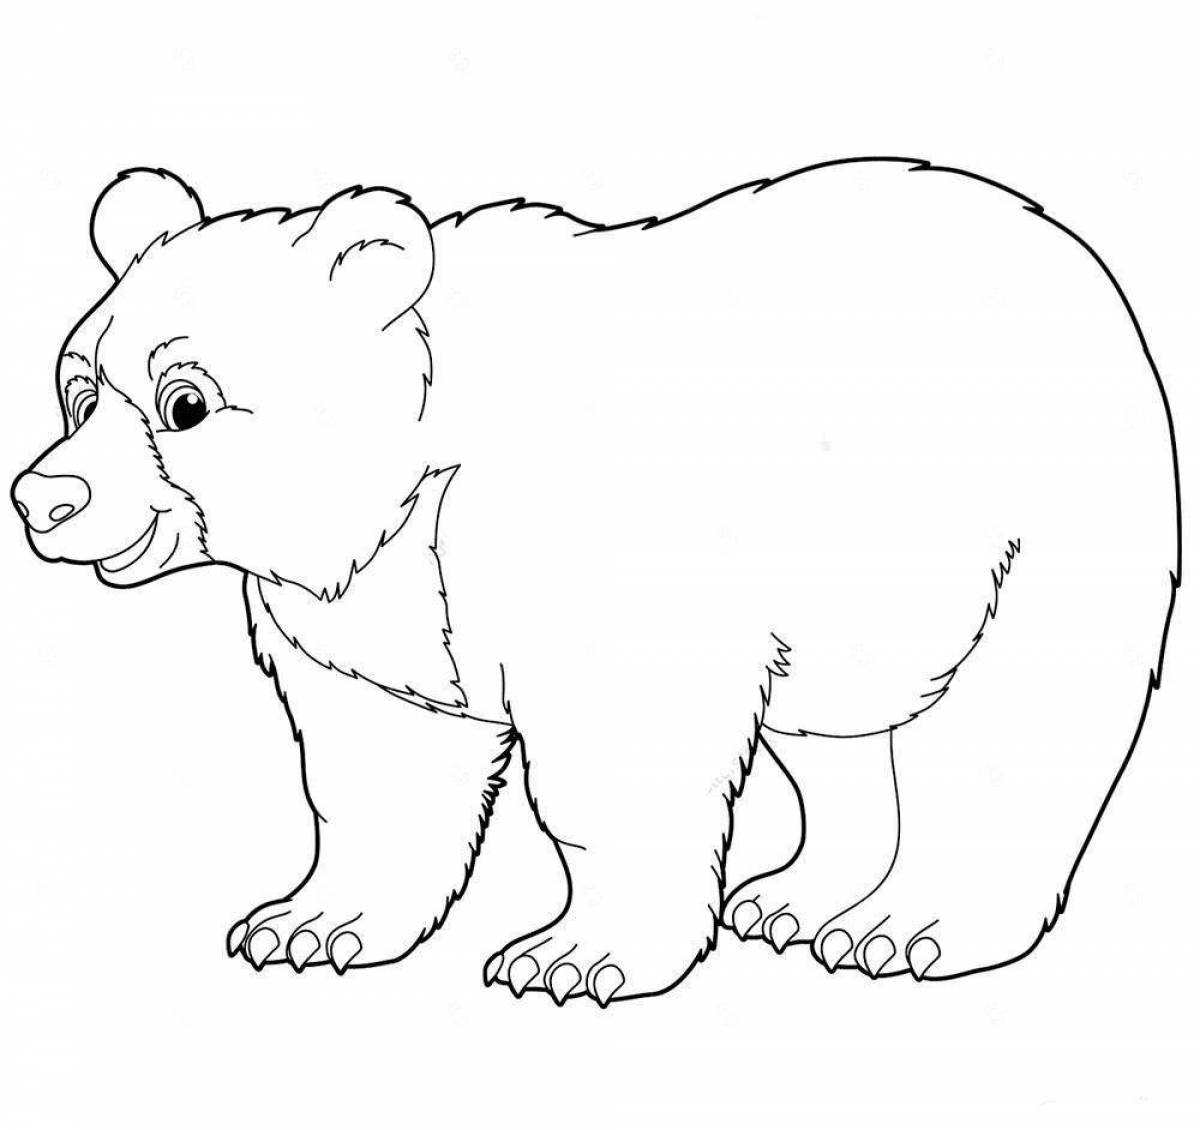 Раскраска яркий медведь для детей